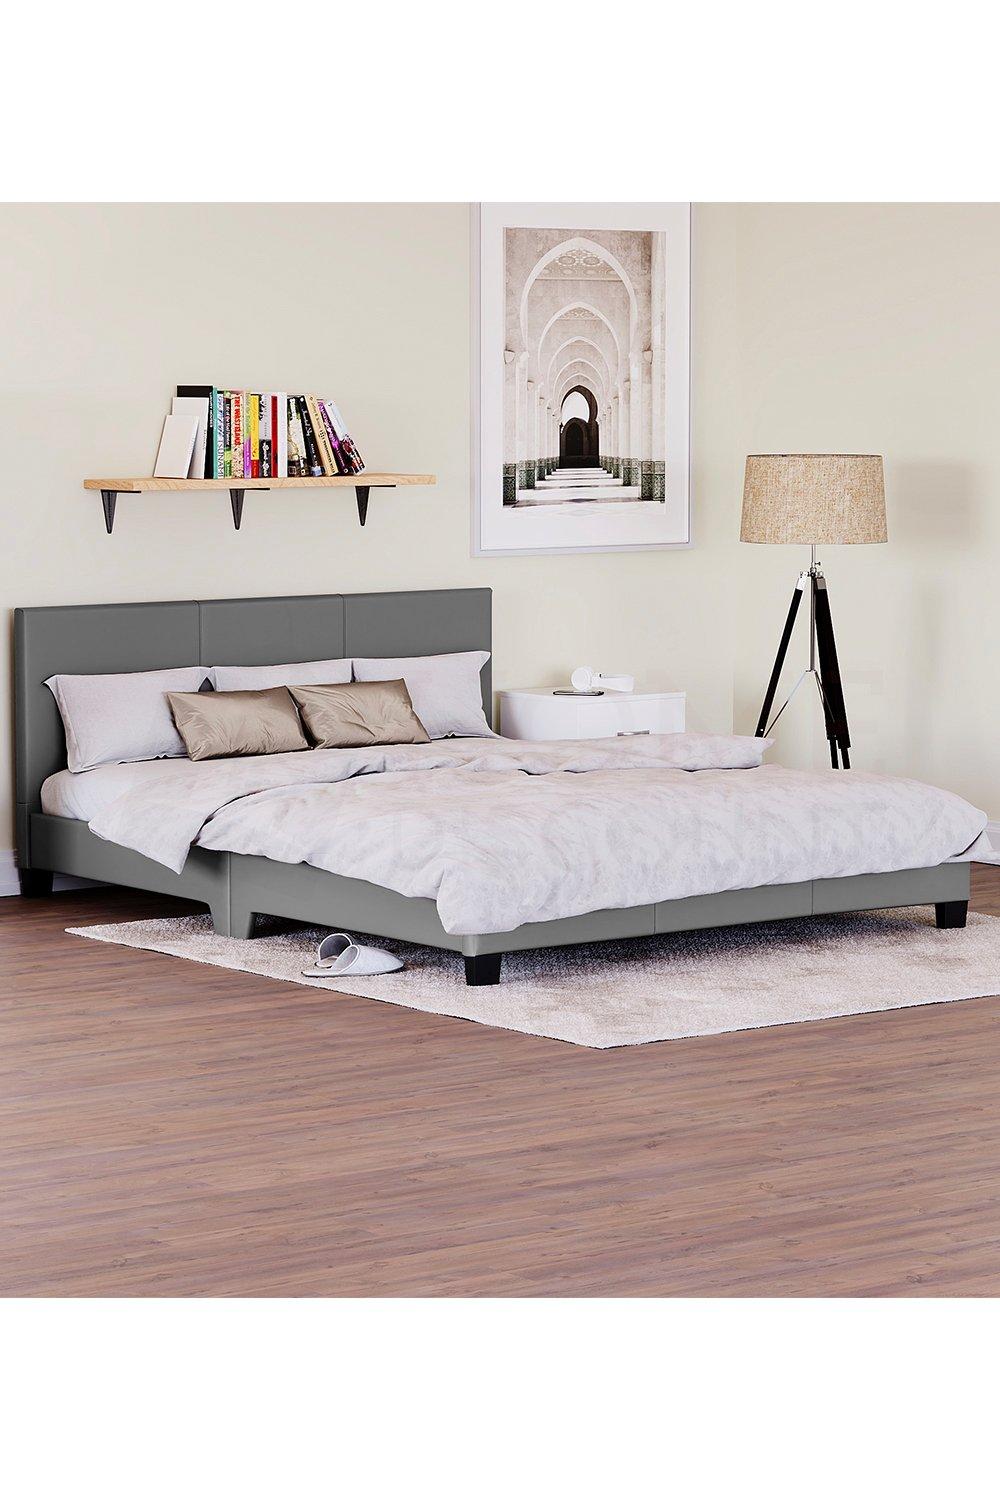 Vida Designs Lisbon King Size Faux Leather Bed Frame Bedroom Furniture 770 x 1550 x 2080 mm